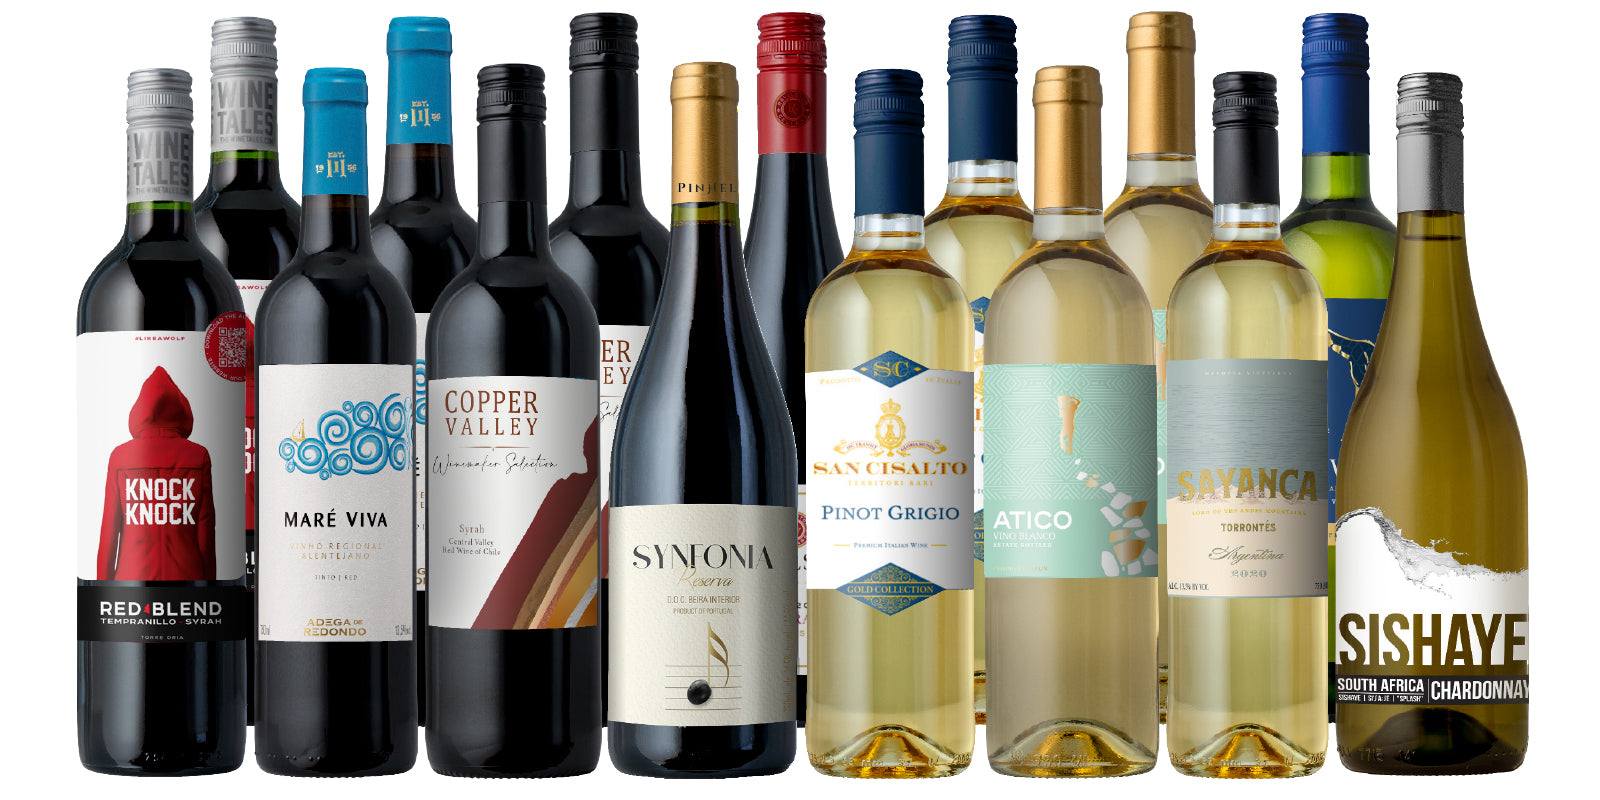 Our Best Selling Vineyard Wines 15-Pack!